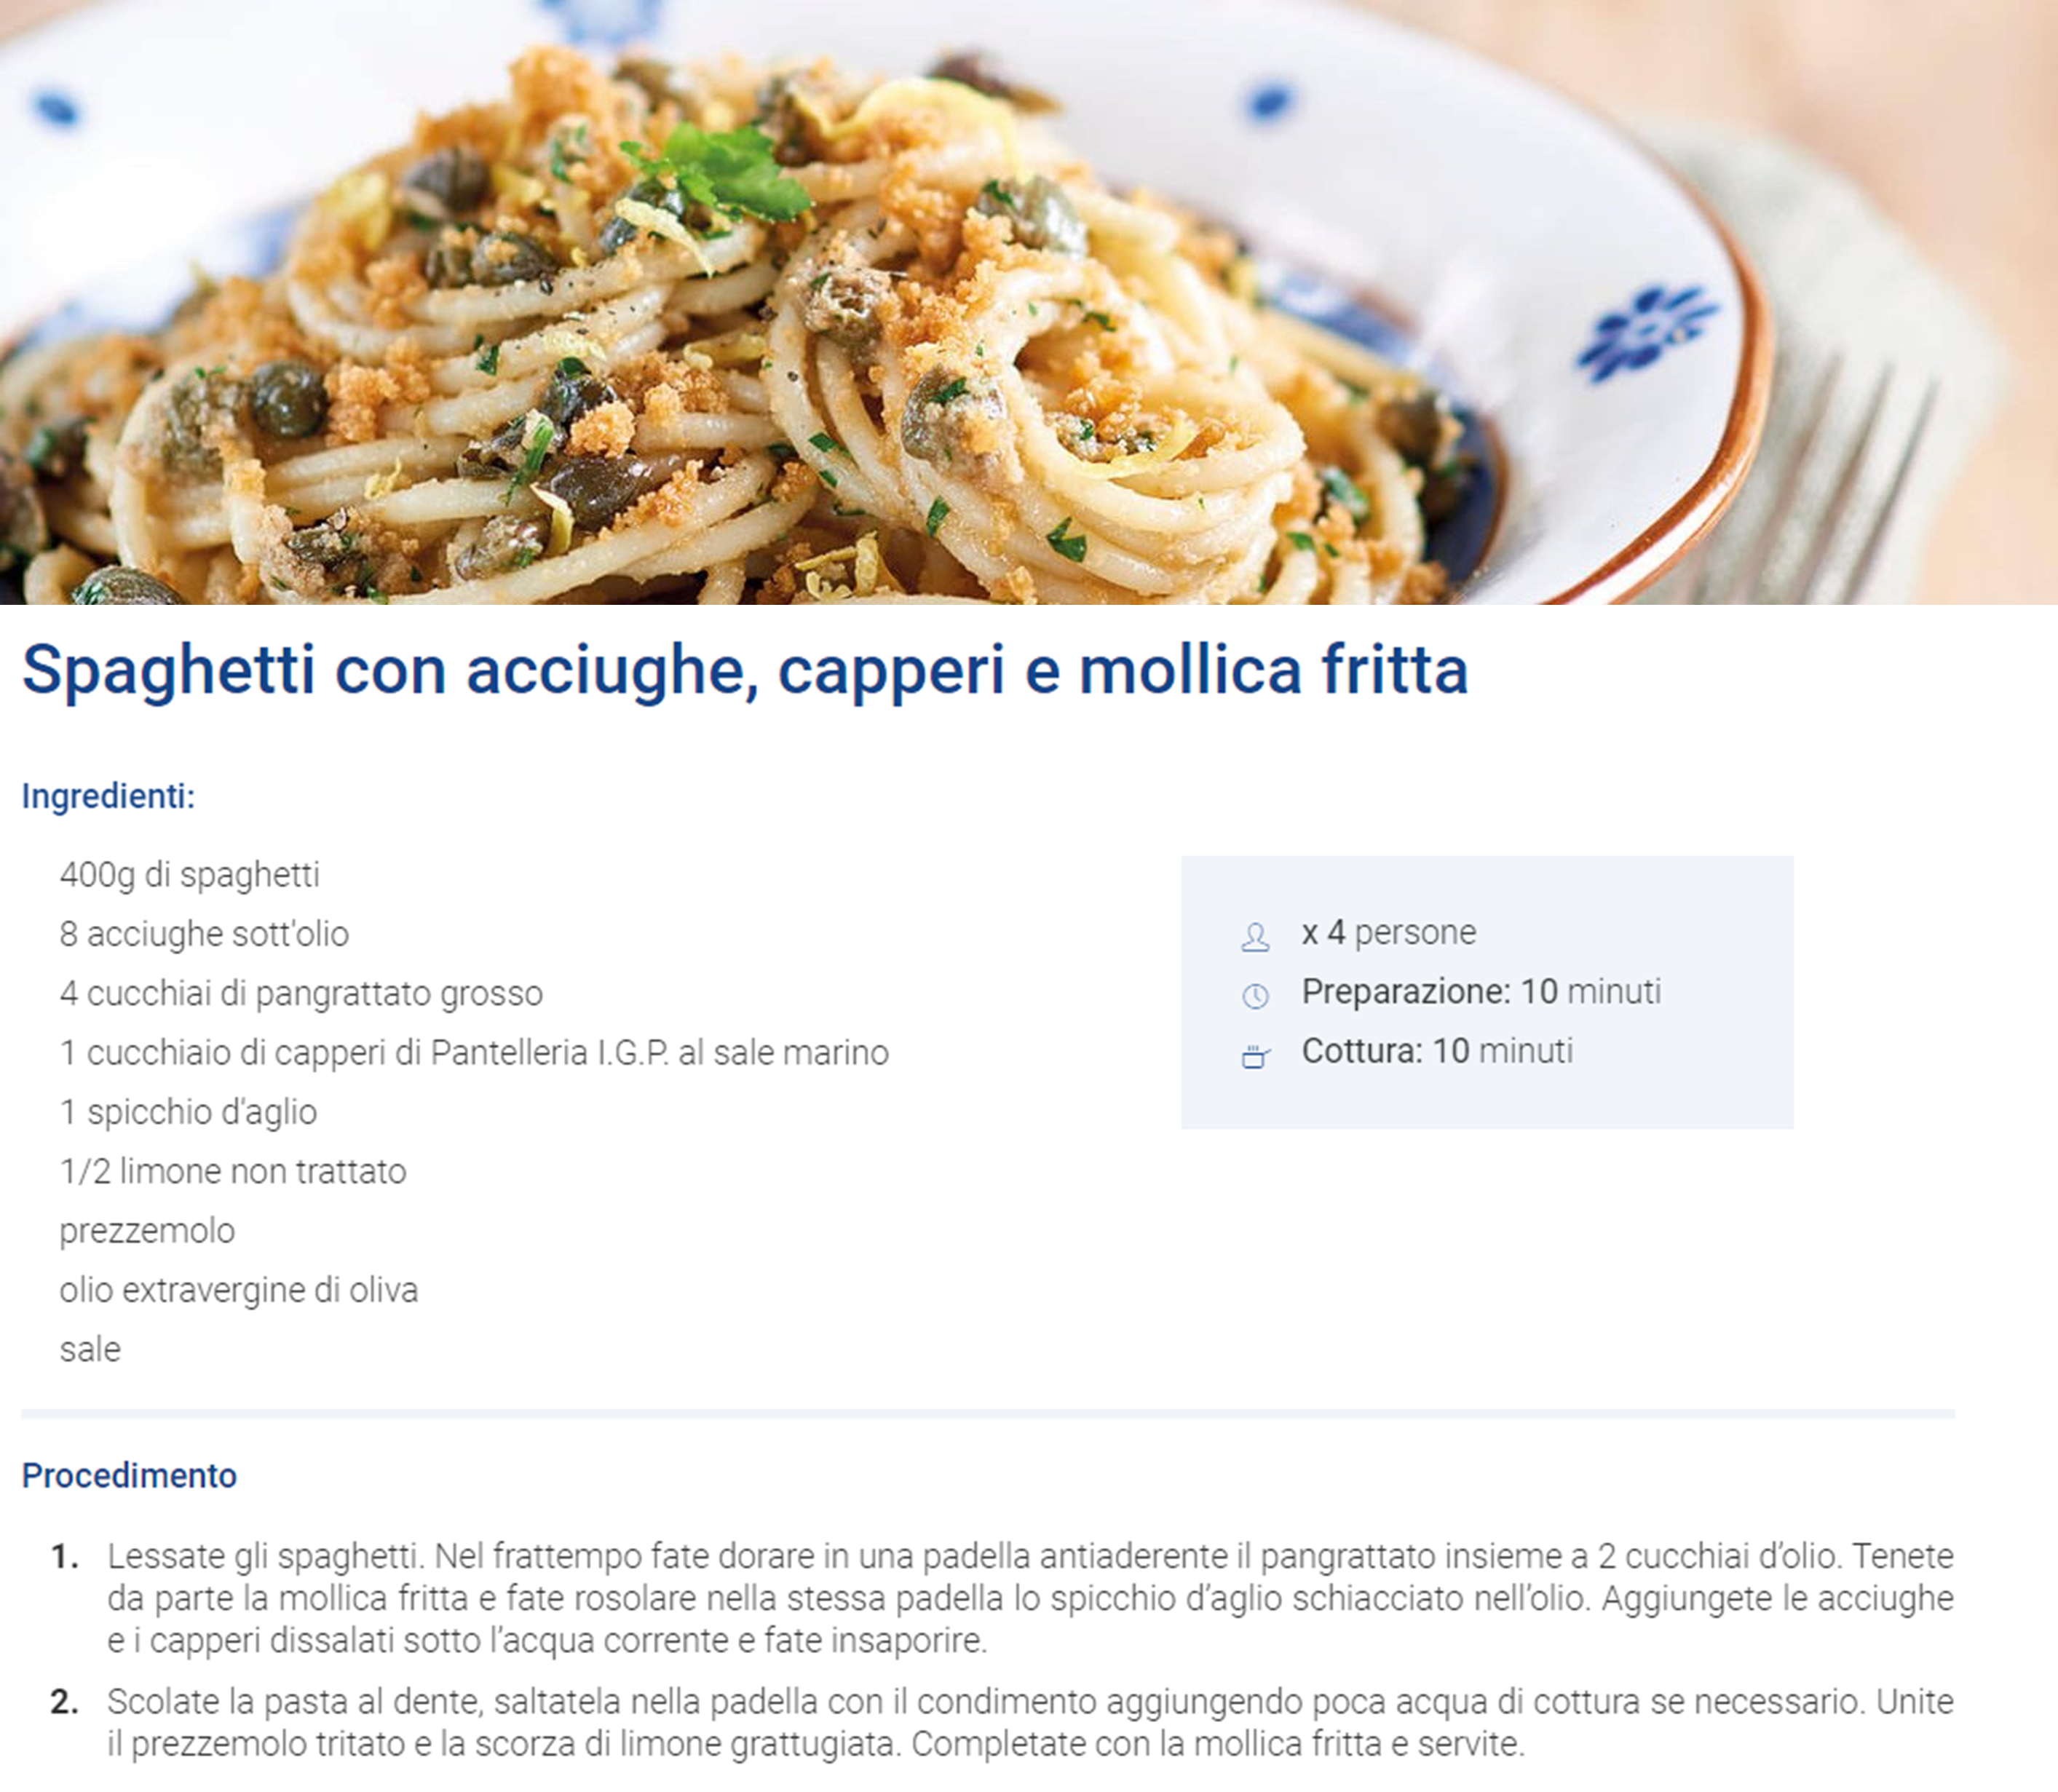 Spaghetti con acciughe, capperi e mollica fritta